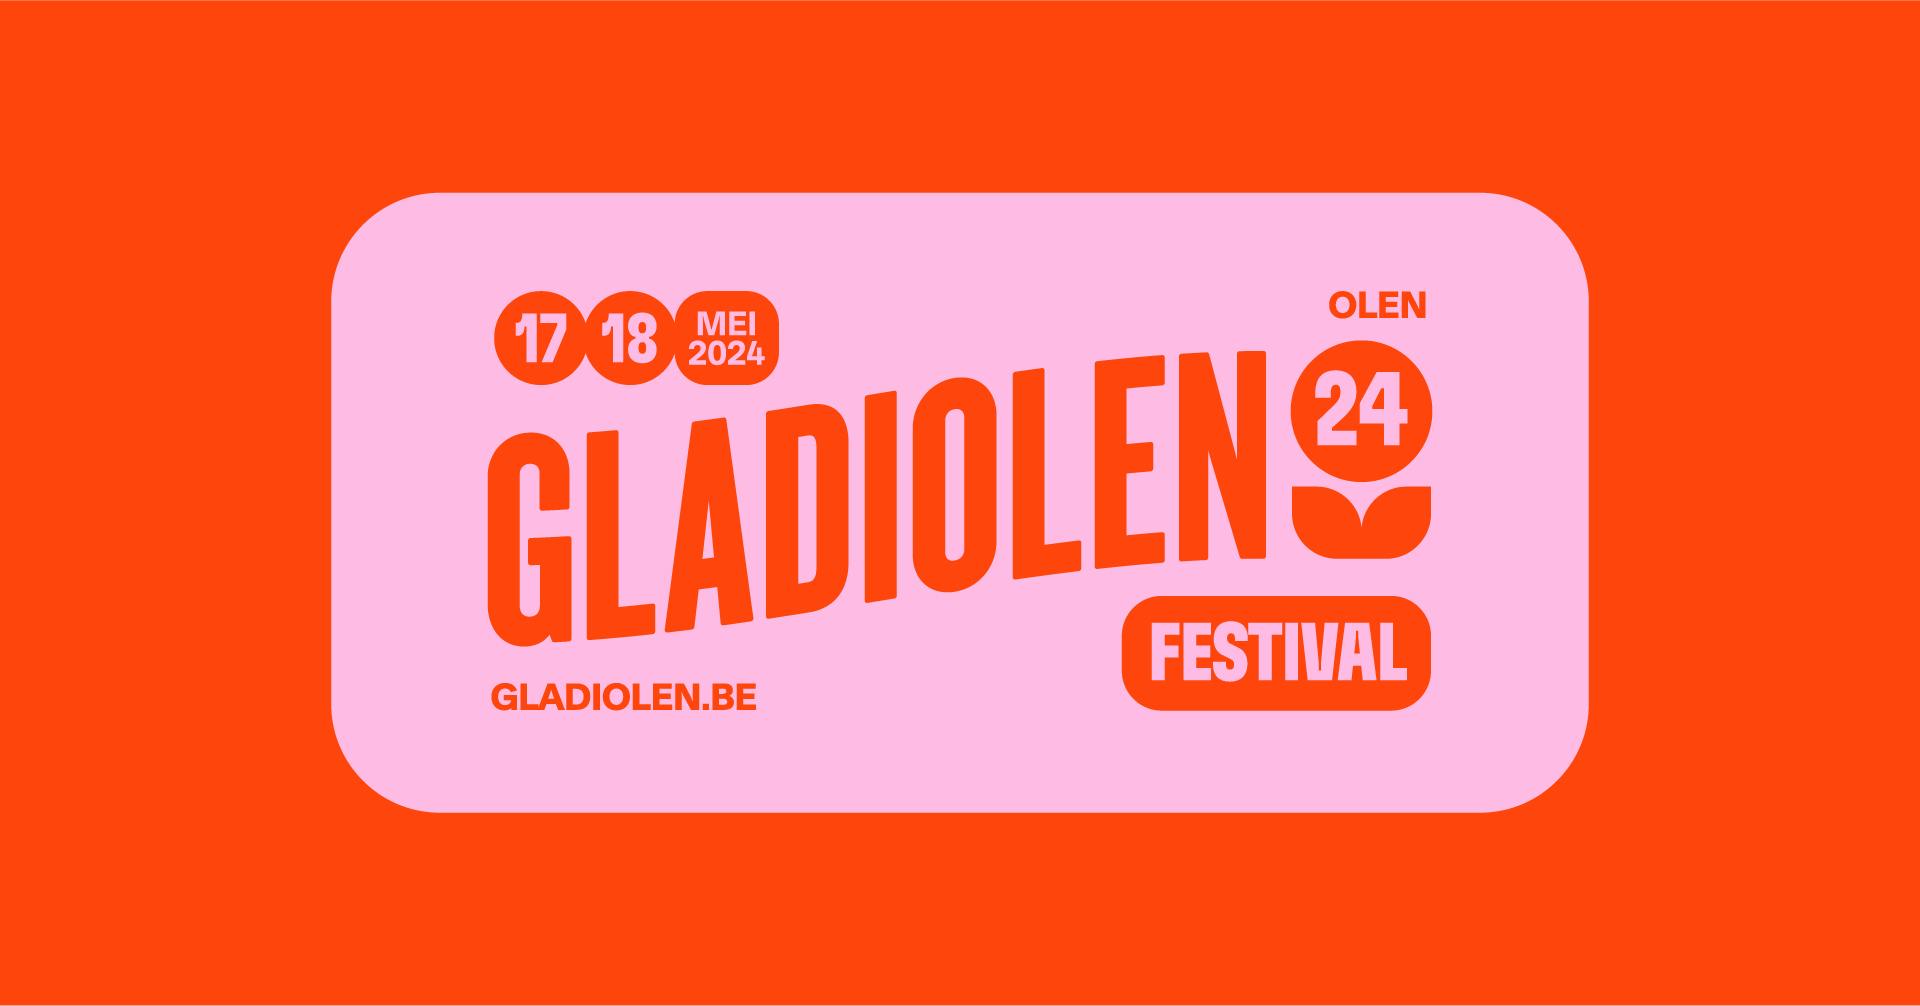 Gladiolen 2024